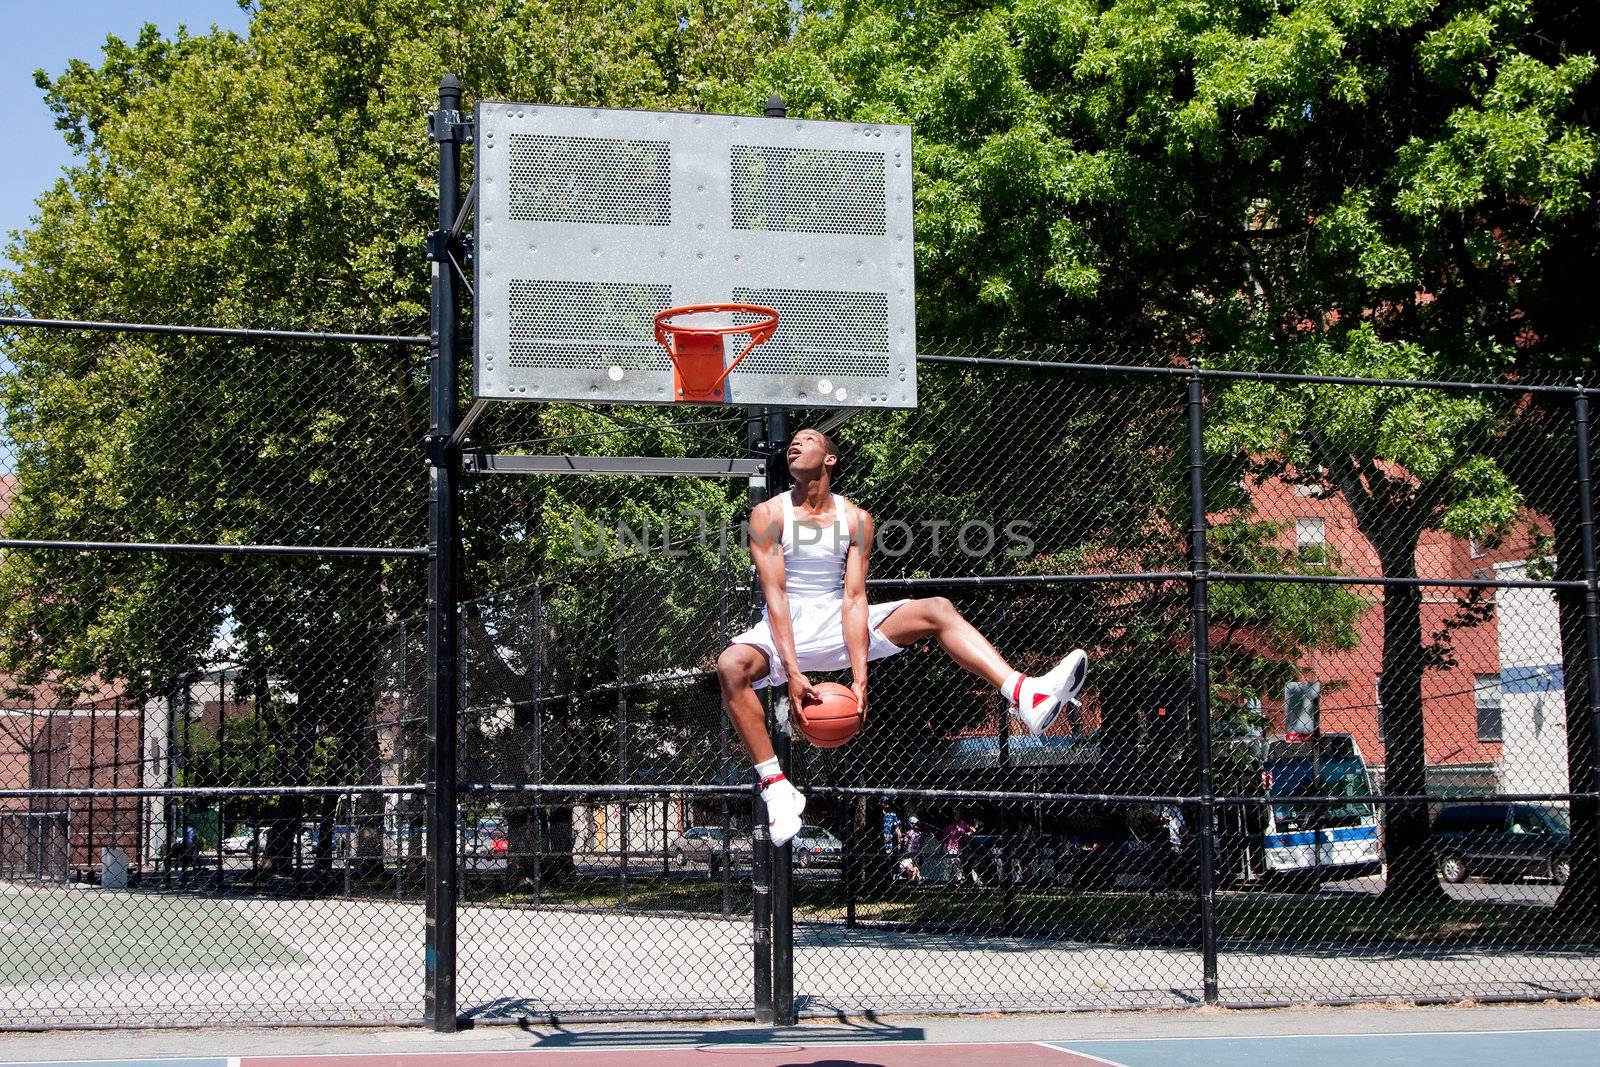 Jumping basketball player by phakimata